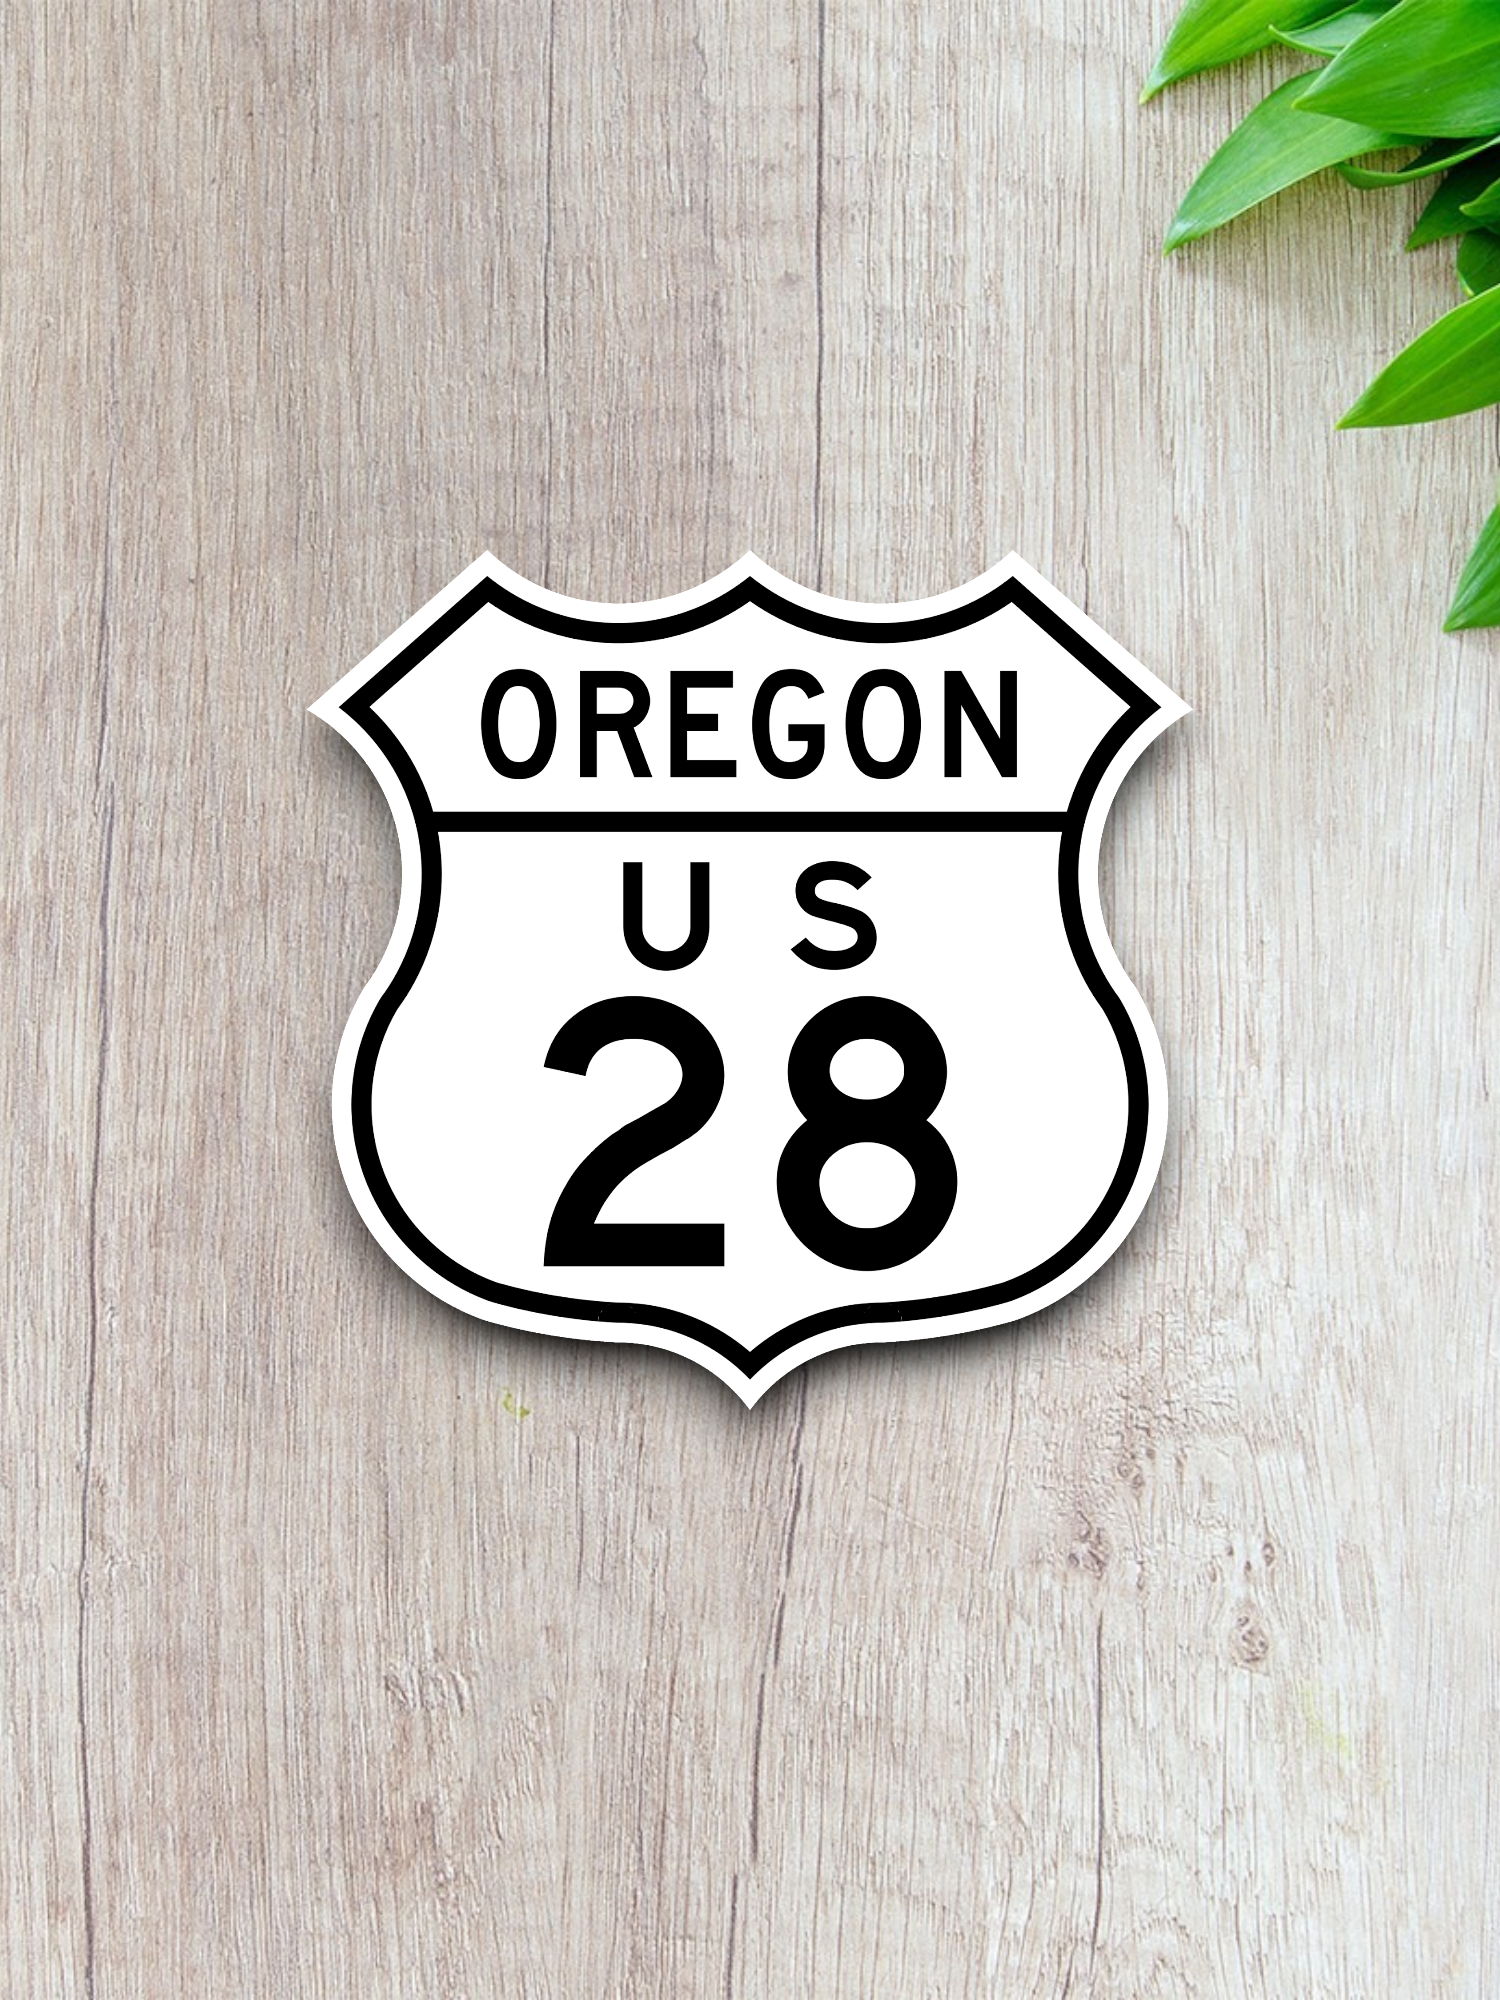 U.S. Route 28 Oregon Road Sign Sticker